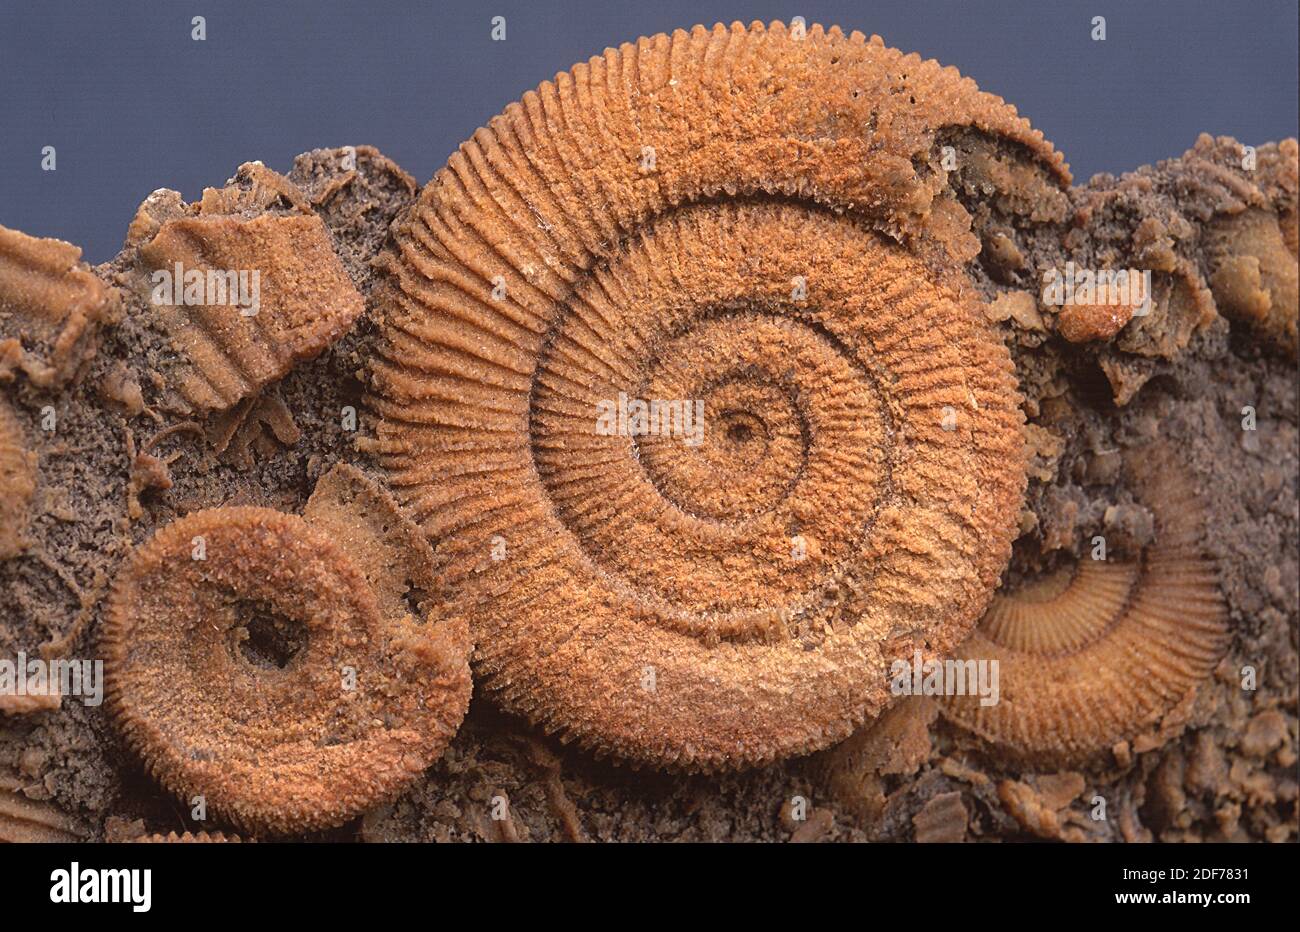 Ammonitas fósiles (Dactyloceras atlanticum). Estos animales marinos extintos son cephalopoda y vivieron durante el Jurásico. Foto de stock